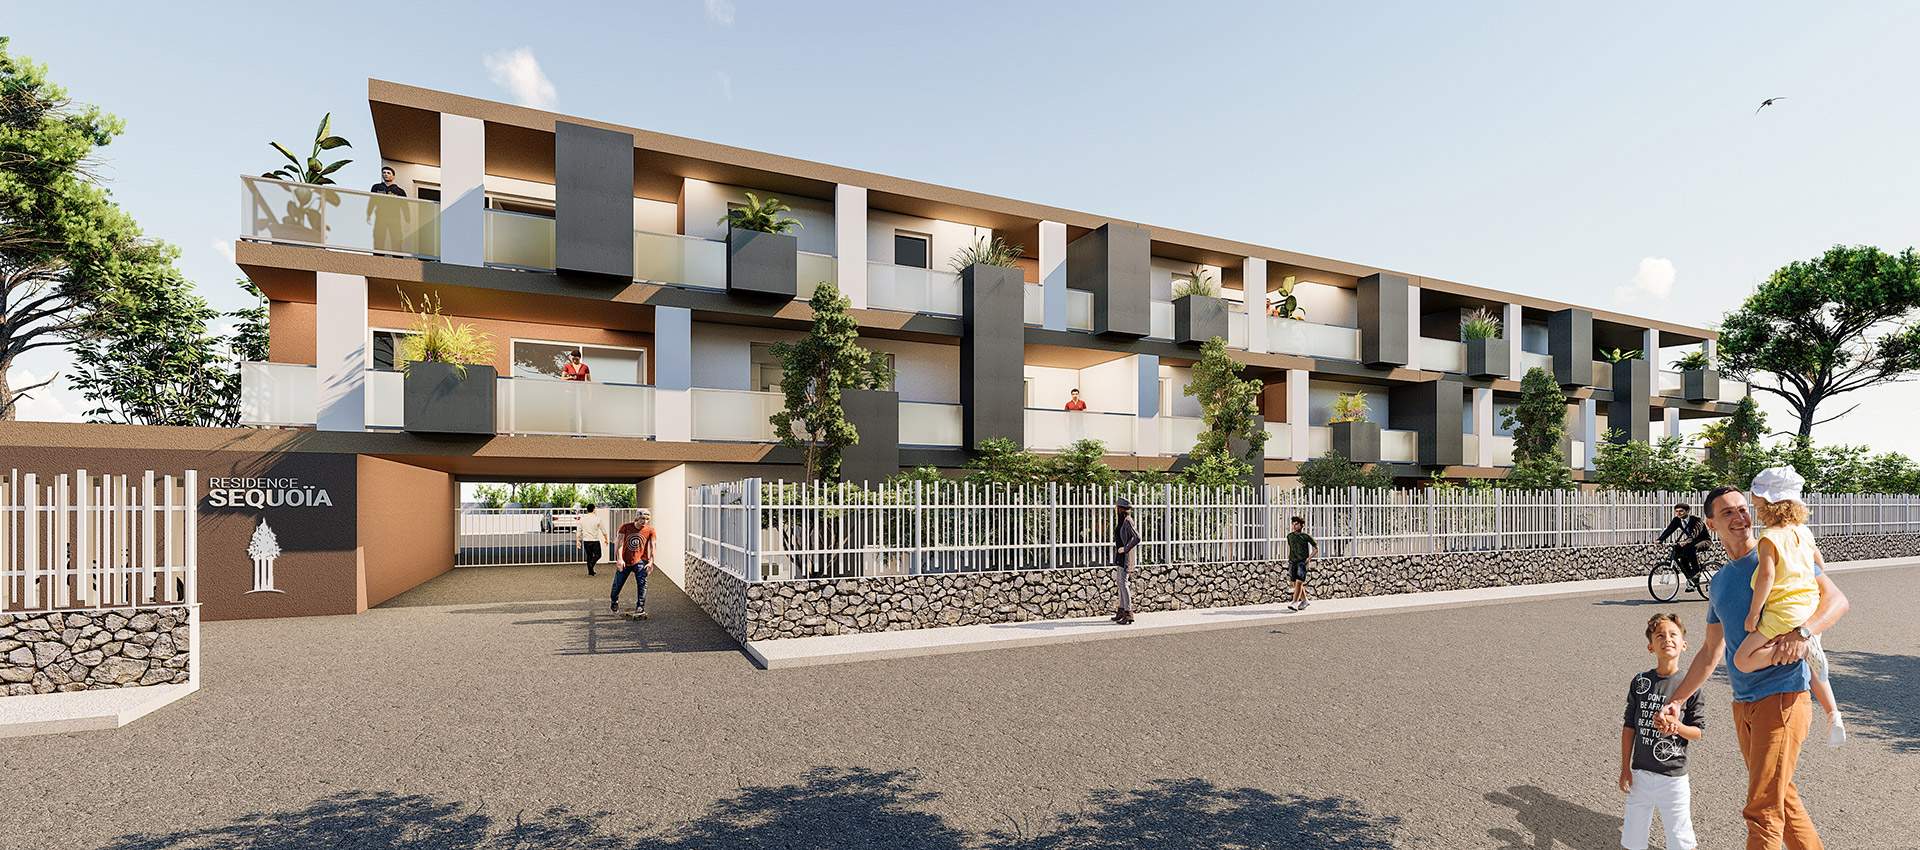 nouveaux logements sociaux à Frontignan (34), dans une résidence de standing